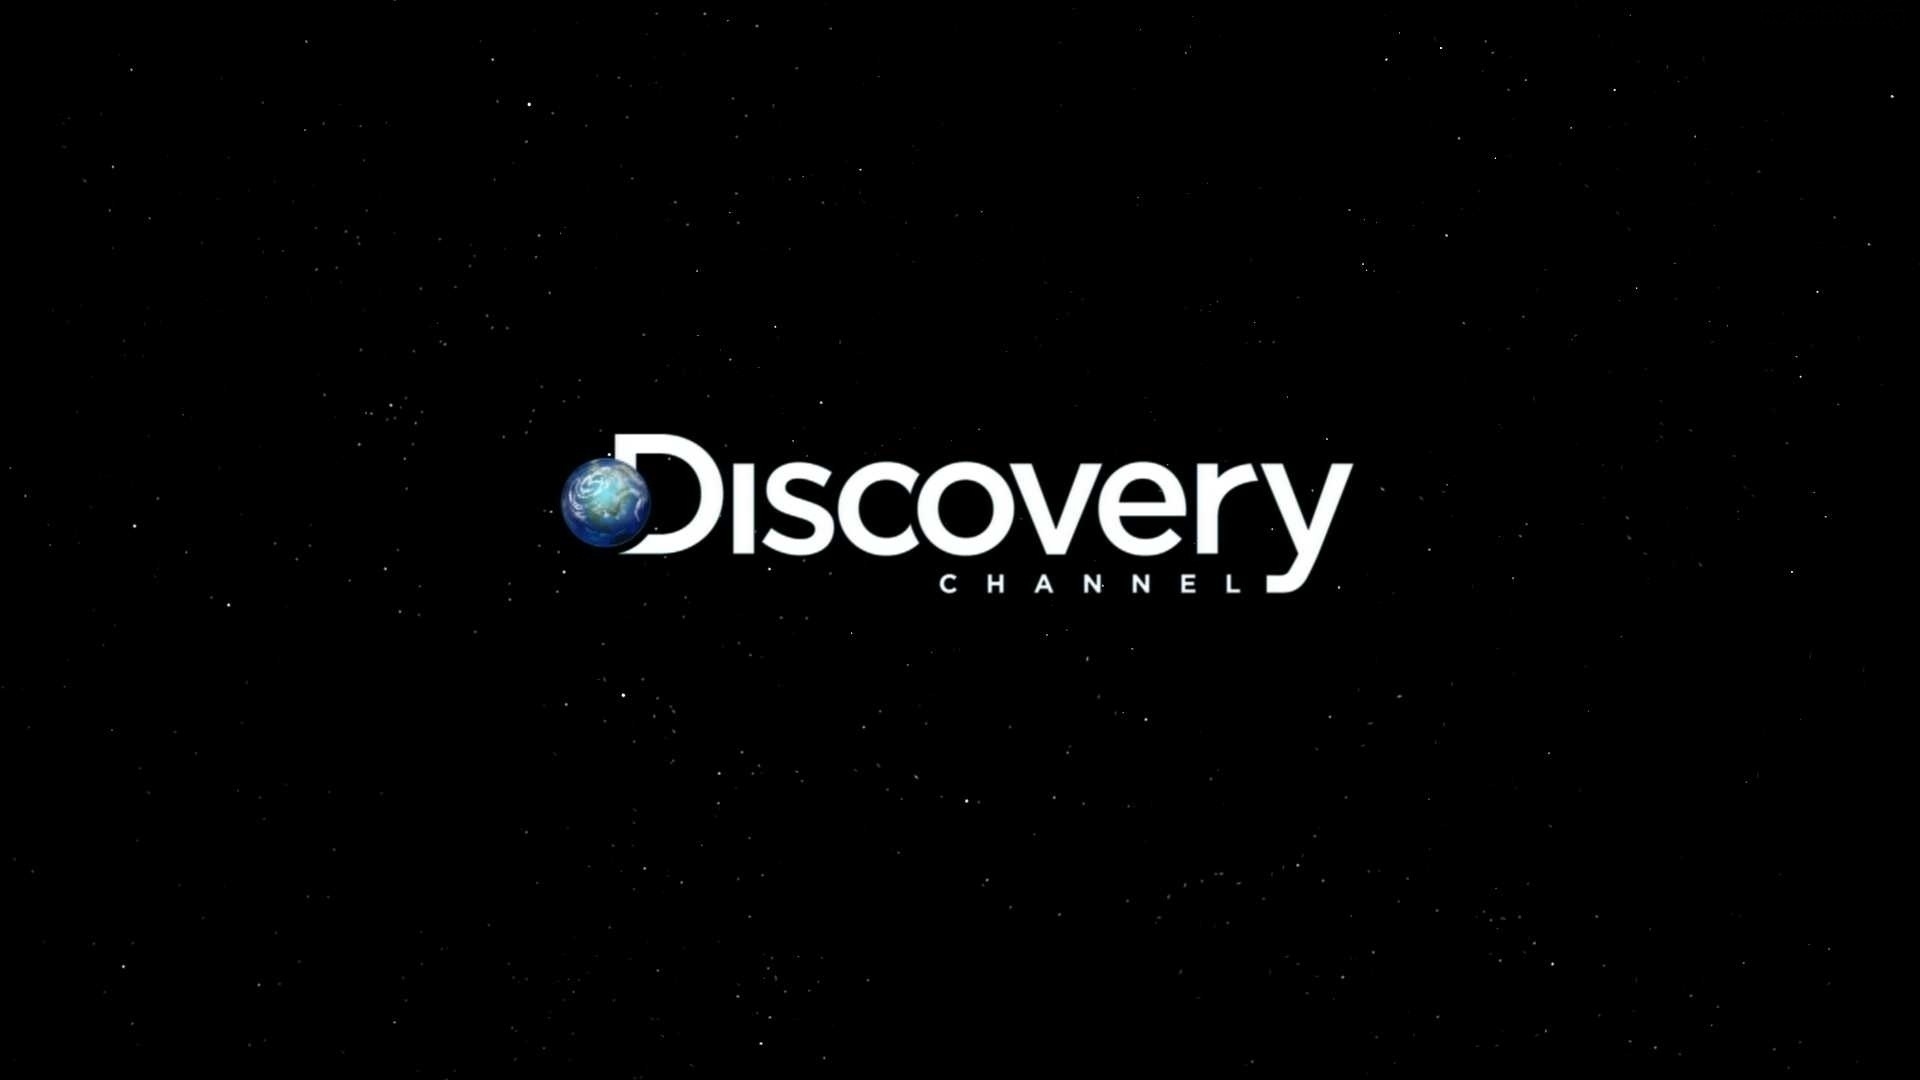 Дискавери док. Дискавери логотип. Дискавери заставка. Дискавери канал. Логотип телеканала Discovery.